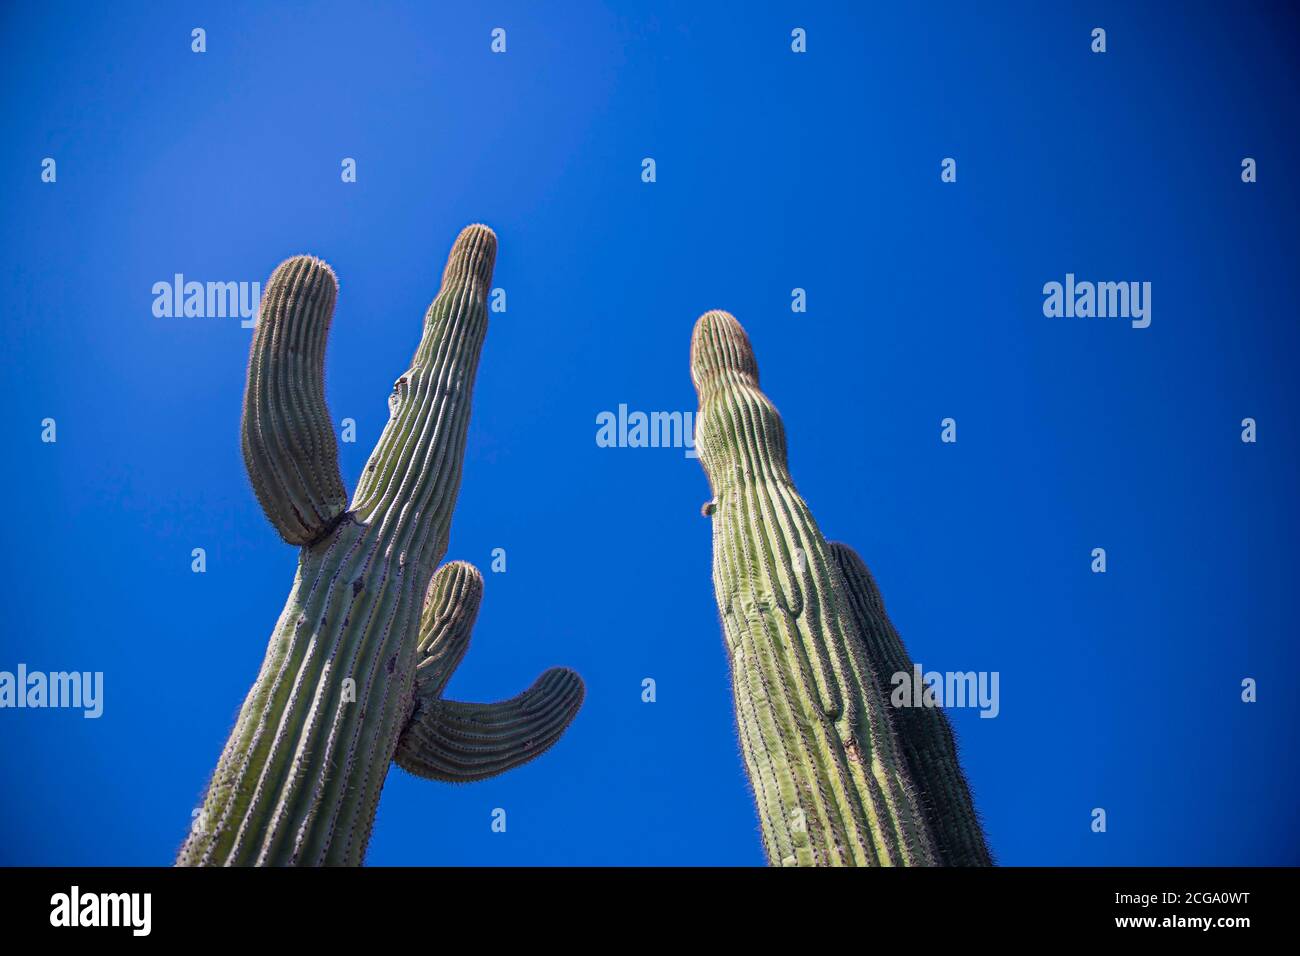 Cactus gigante mexicano, Pachycereus pringlei, cardón gigante mexicano o cactus elefante, especie de cactus nativa del noroeste de México en los estados de Baja California, Baja California Sur y Sonora. Desierto de Sonora en la sierra de la Reserva de la Biosfera El Pinacate y gran desierto de Altar en Sonora, Mexico. Patrimonio de la Humanidad por la UNESCO. Ecosistema tipico entre la frontera del desierto de Arizona  y Sonora. plantas y vegetacion escasa del desierto. Arido, seco, sequia. Se le conoce comúnmente como cardón, un nombre derivado de la palabra española cardo, que significa 'car Stock Photo